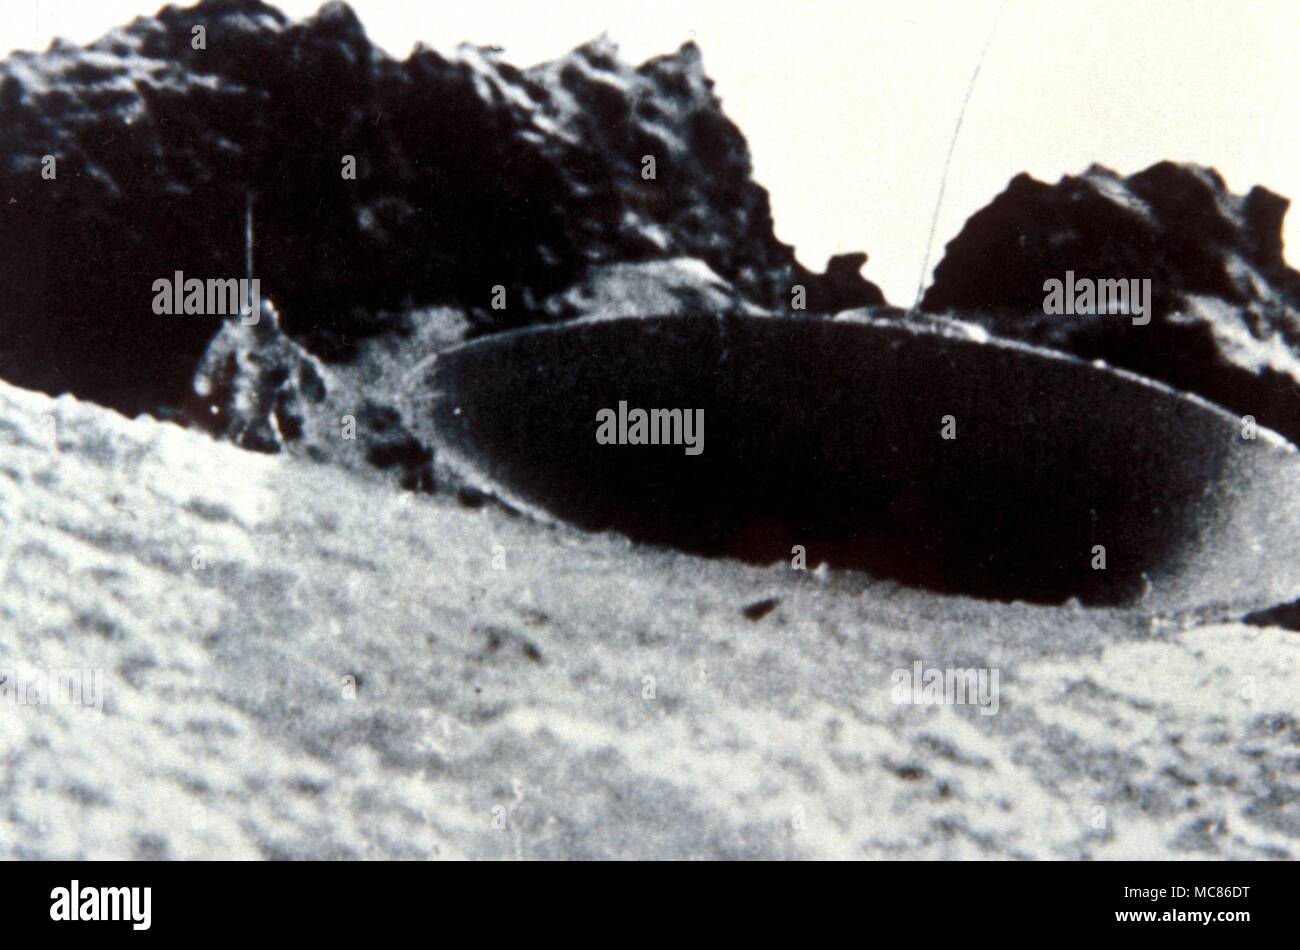 UFO - oggetto volante non identificato Fotografia di sbarcati ufo (con alien visibile a sinistra del craft) prese da Gampiere Montguzzi sul ghiacciaio del Bernina, Italia. Uno di una serie Foto Stock